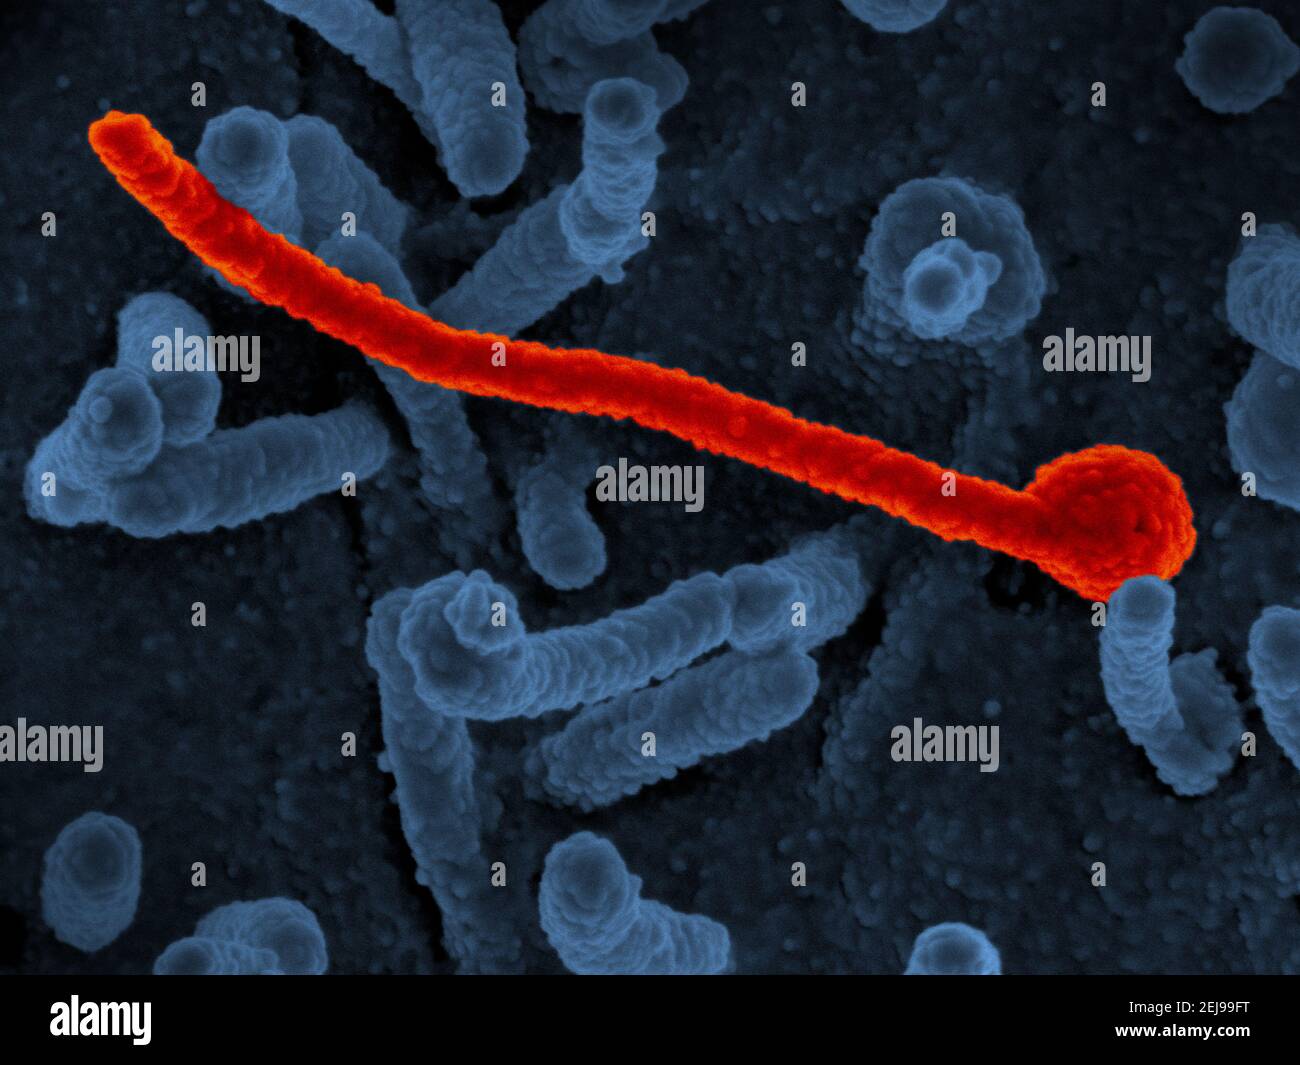 Ebola virus makona from west african epidemic Stock Photo